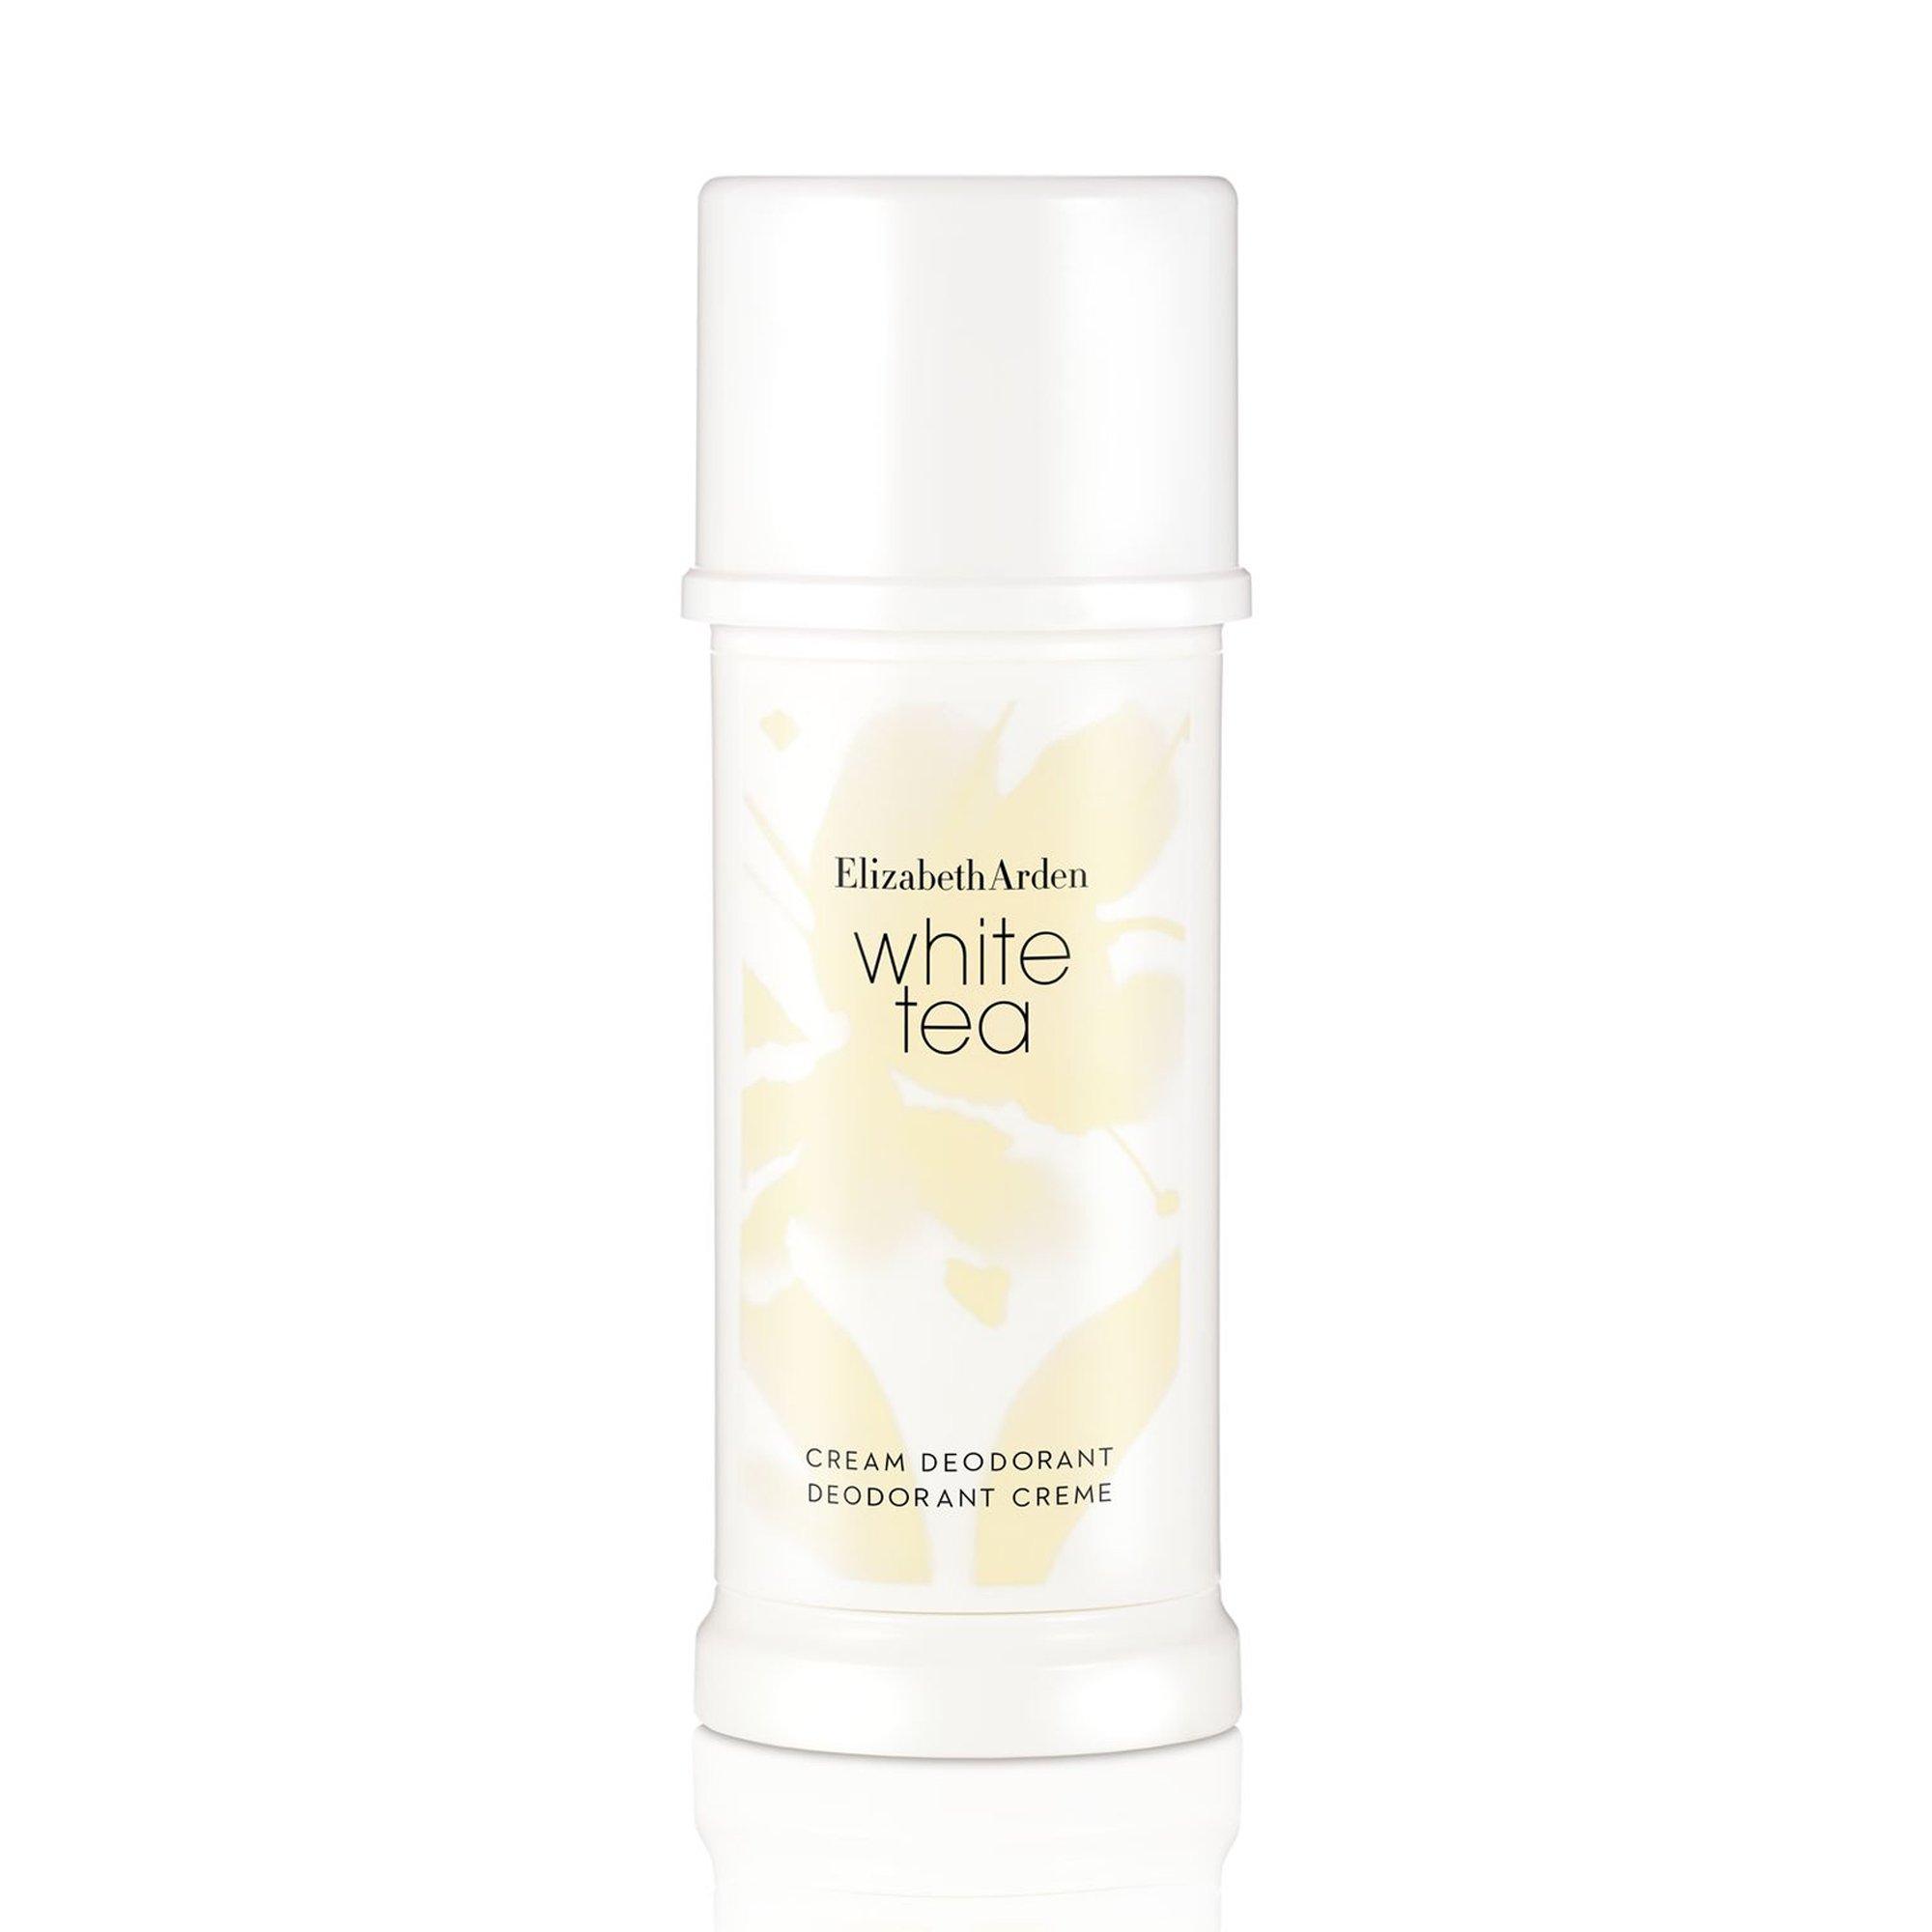 Image of Elizabeth Arden White Tea Deodorant Cream - 40ml